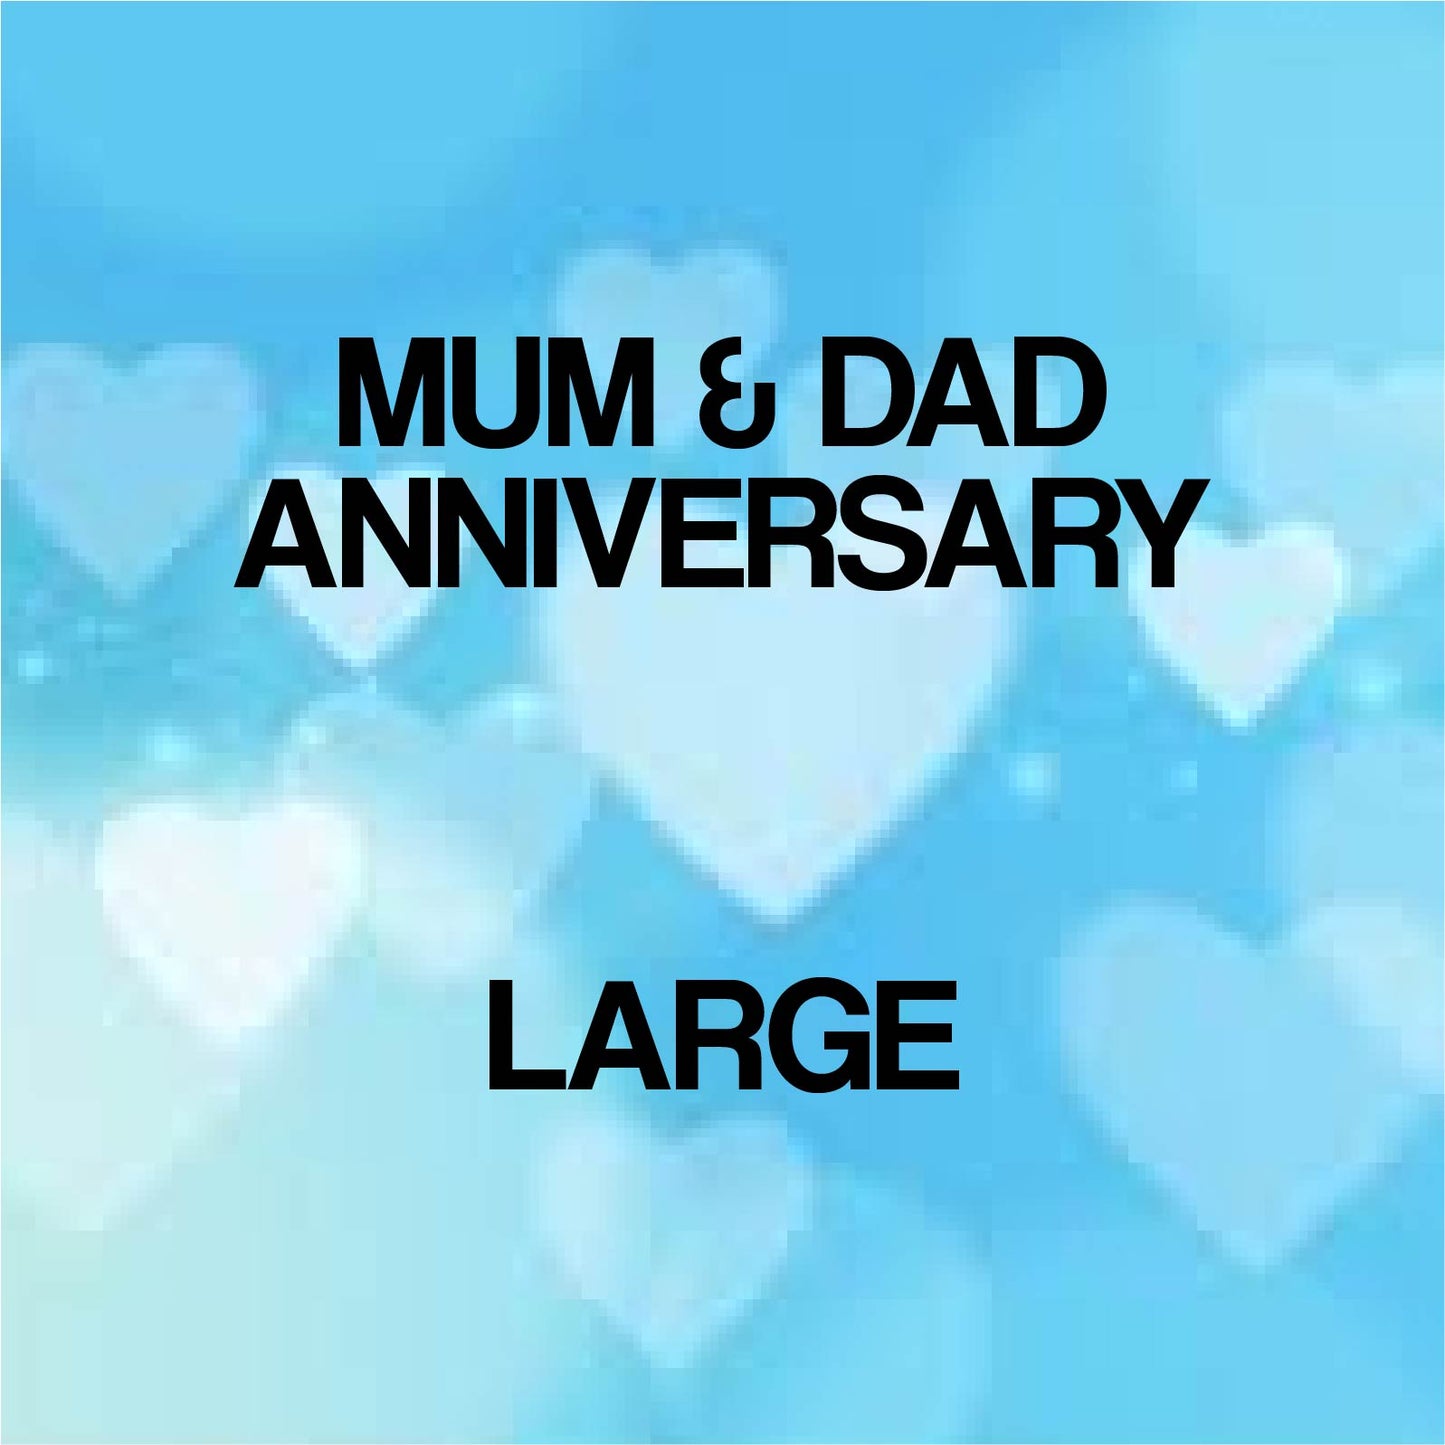 Mum & Dad Anniversary